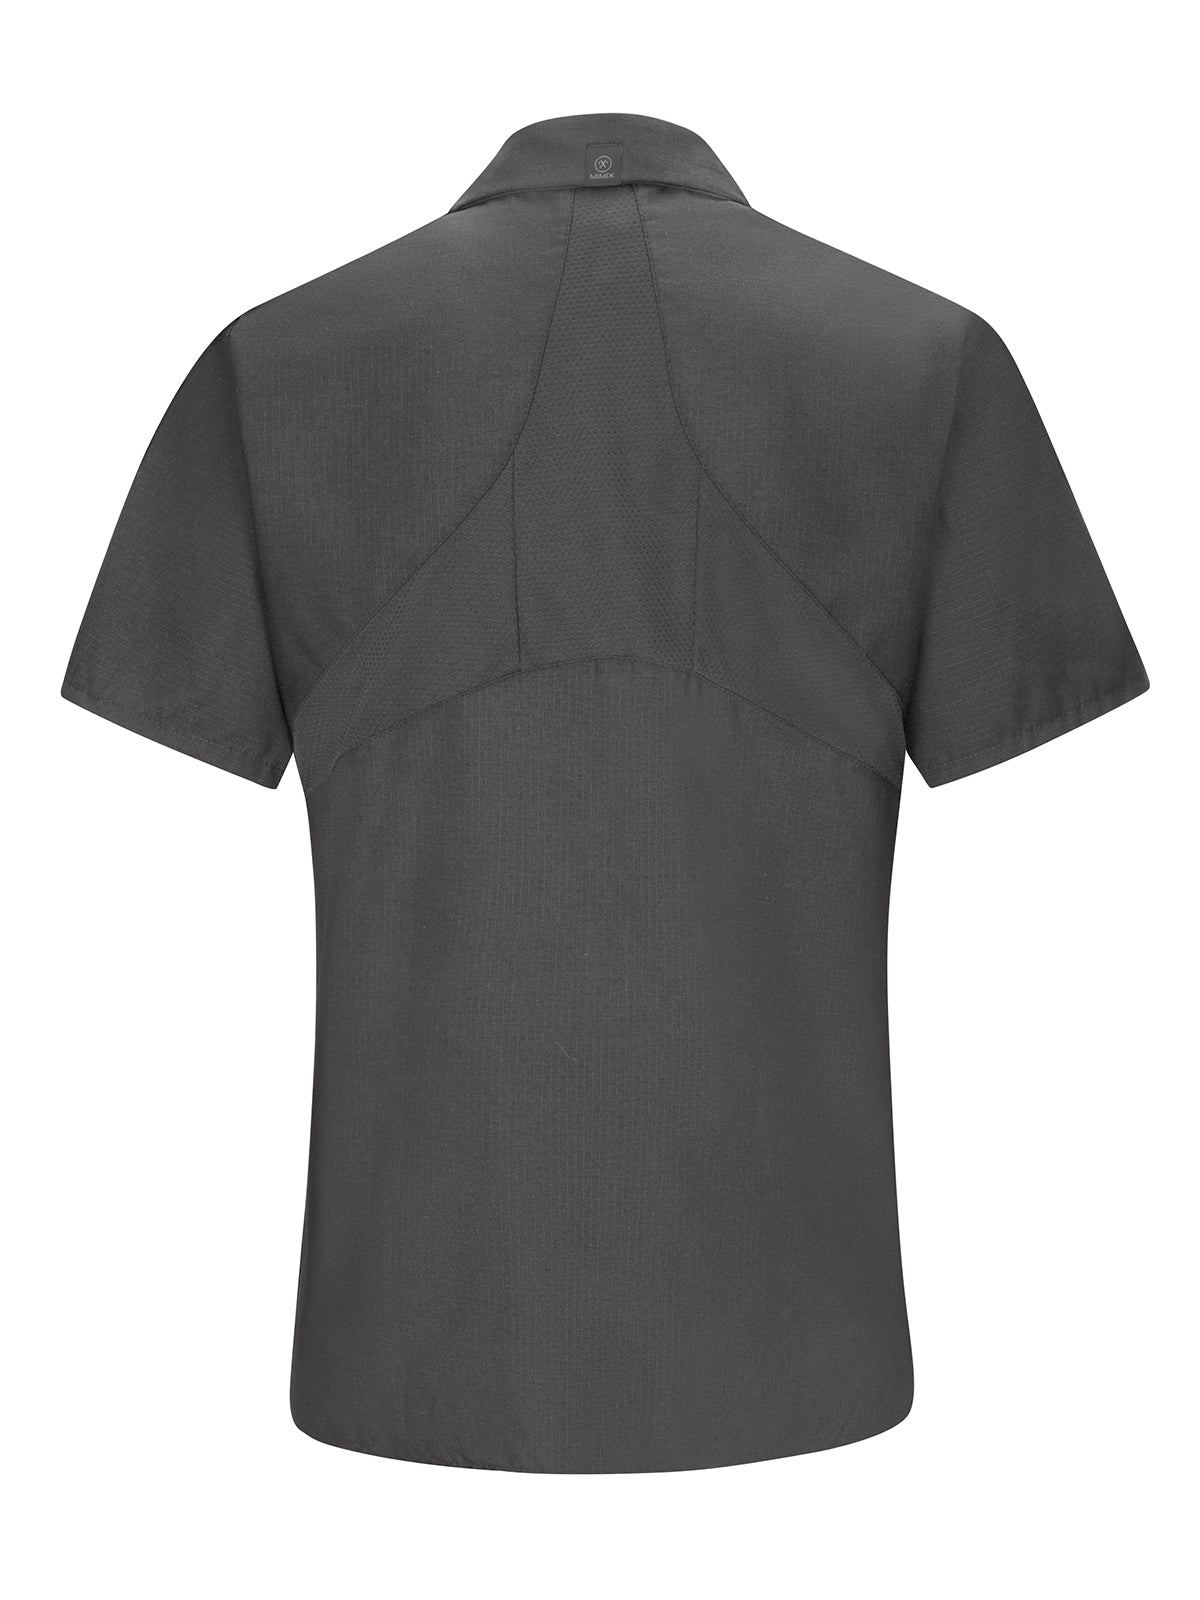 Women's Short Sleeve Mimix Work Shirt - SX21 - Charcoal